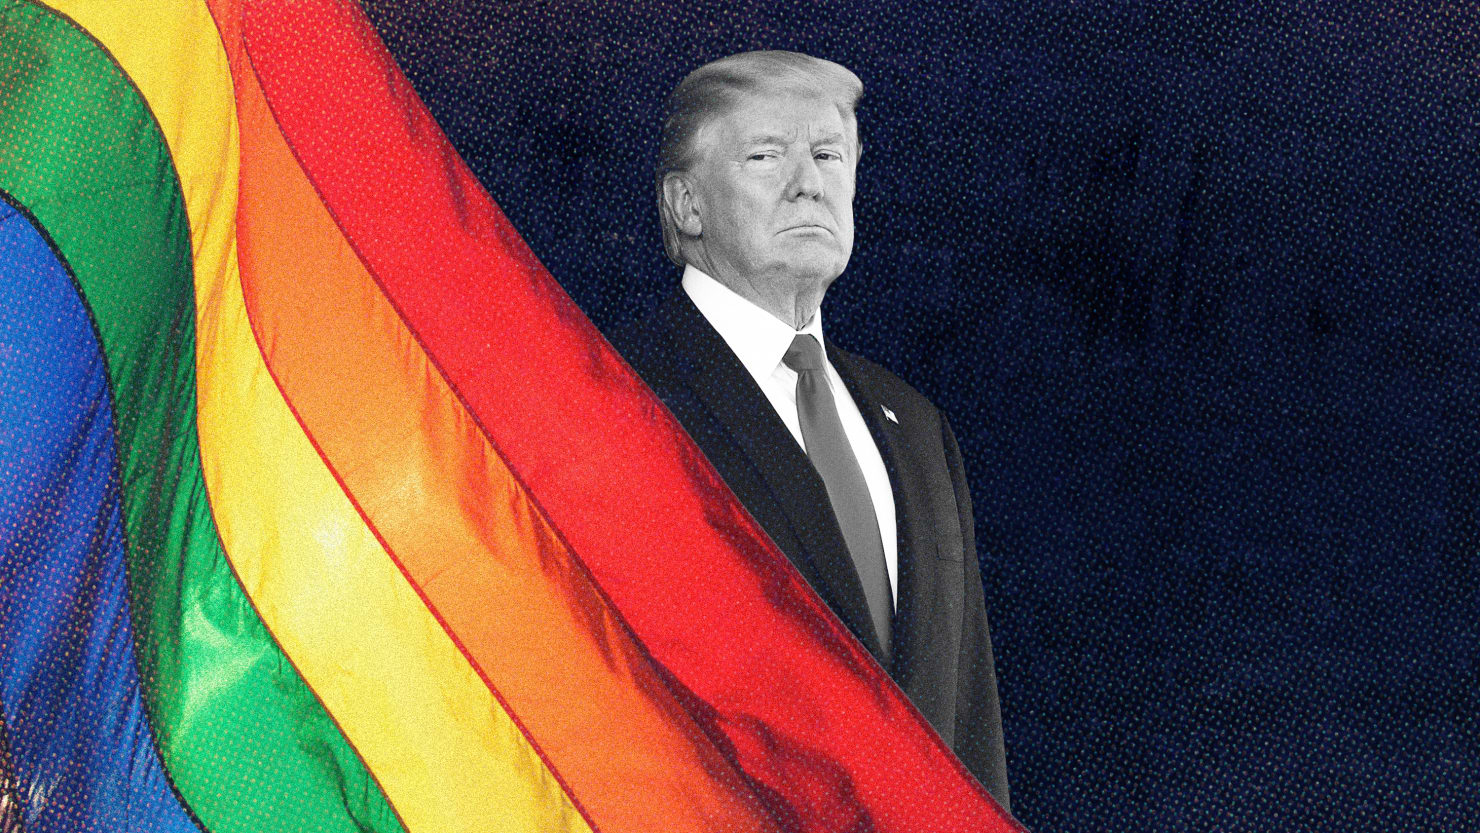 El nuevo libro de Haberman detalla el comportamiento transfóbico y antigay de Trump